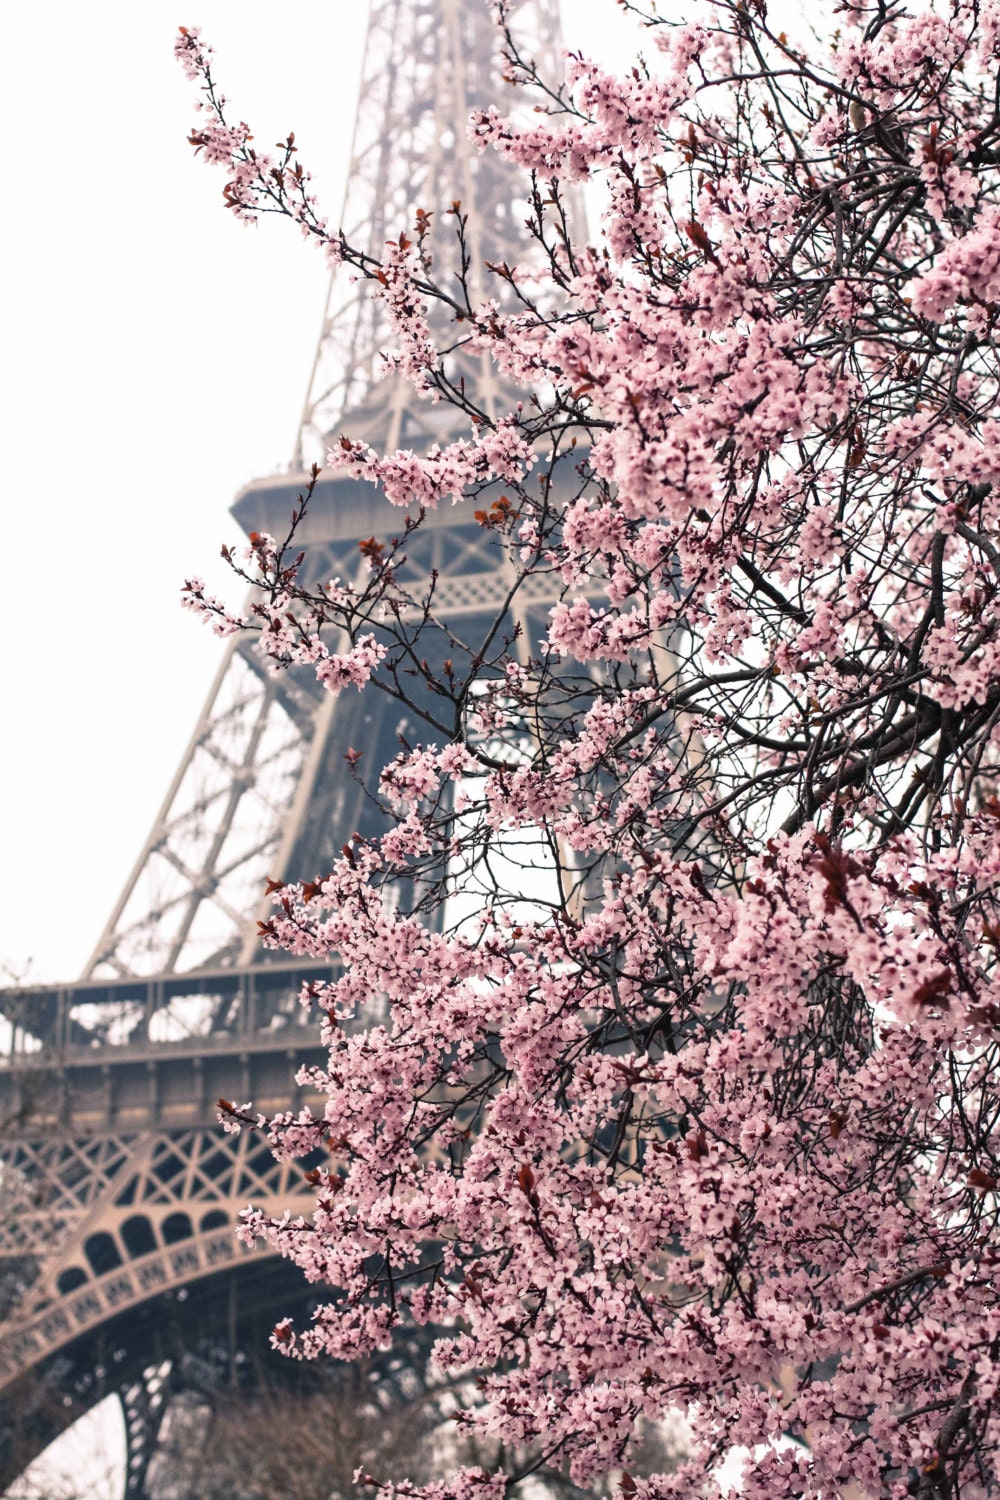 Paris Photography - Paris Je t'aime - Paris in the Springtime - Pink Cherry Blossoms Eiffel Tower - Paris Home Decor - Blush Pink - rebeccaplotnick